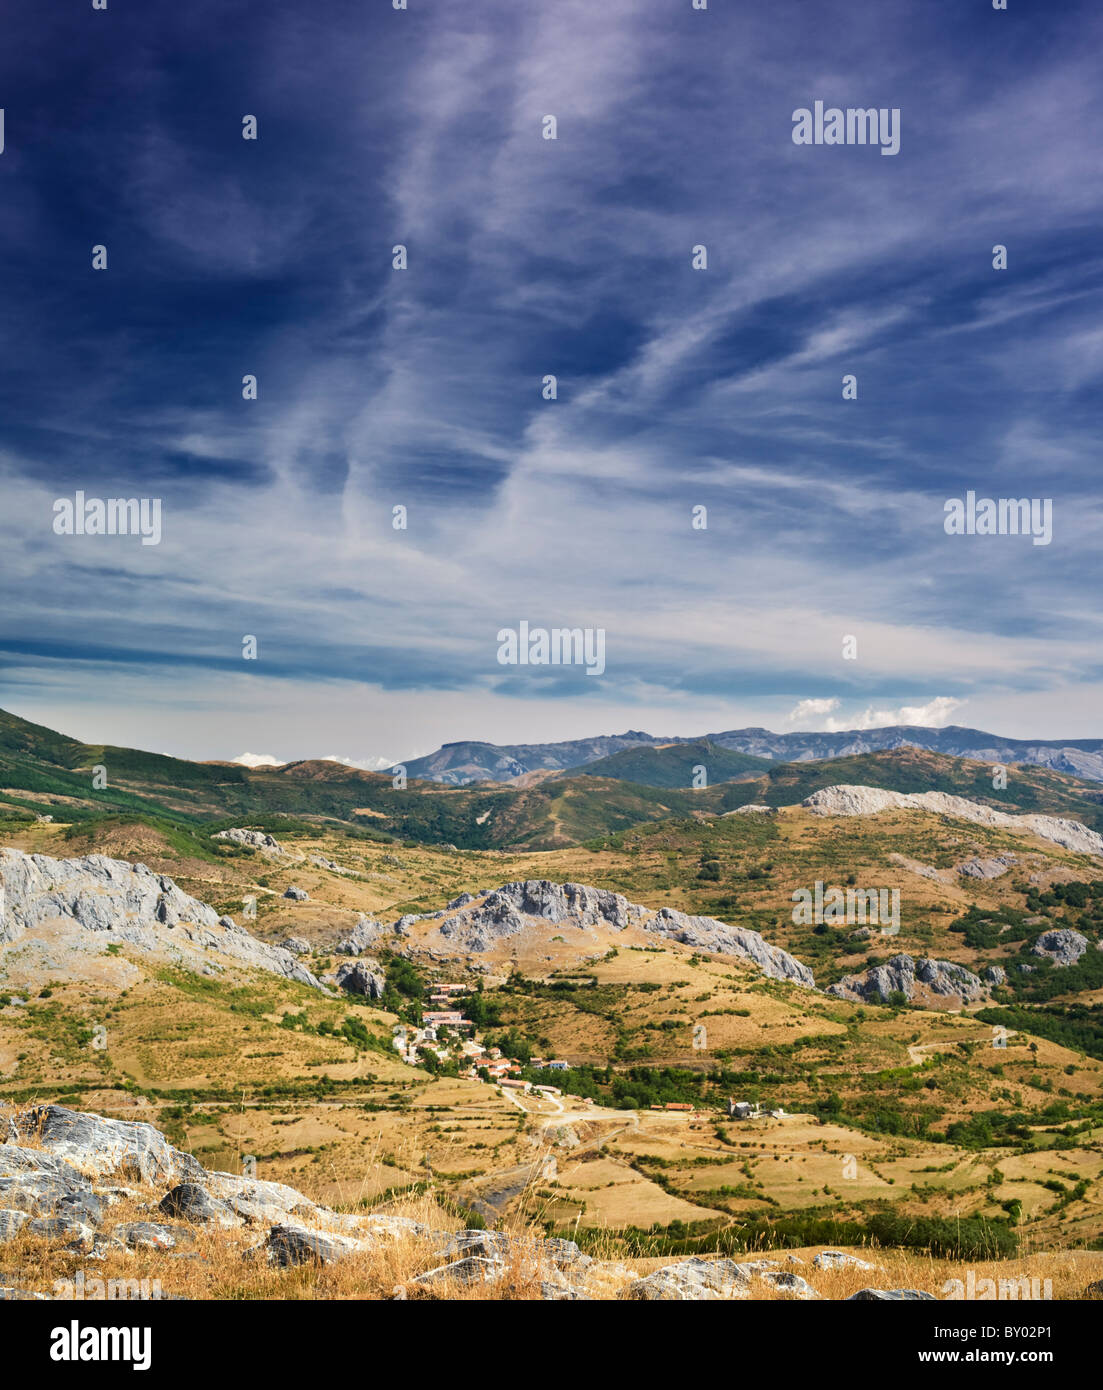 Das Dorf Santibañez de Resoba in den Palentine Bergen, Teil des Kantabrischen Gebirges im Norden Spaniens Stockfoto